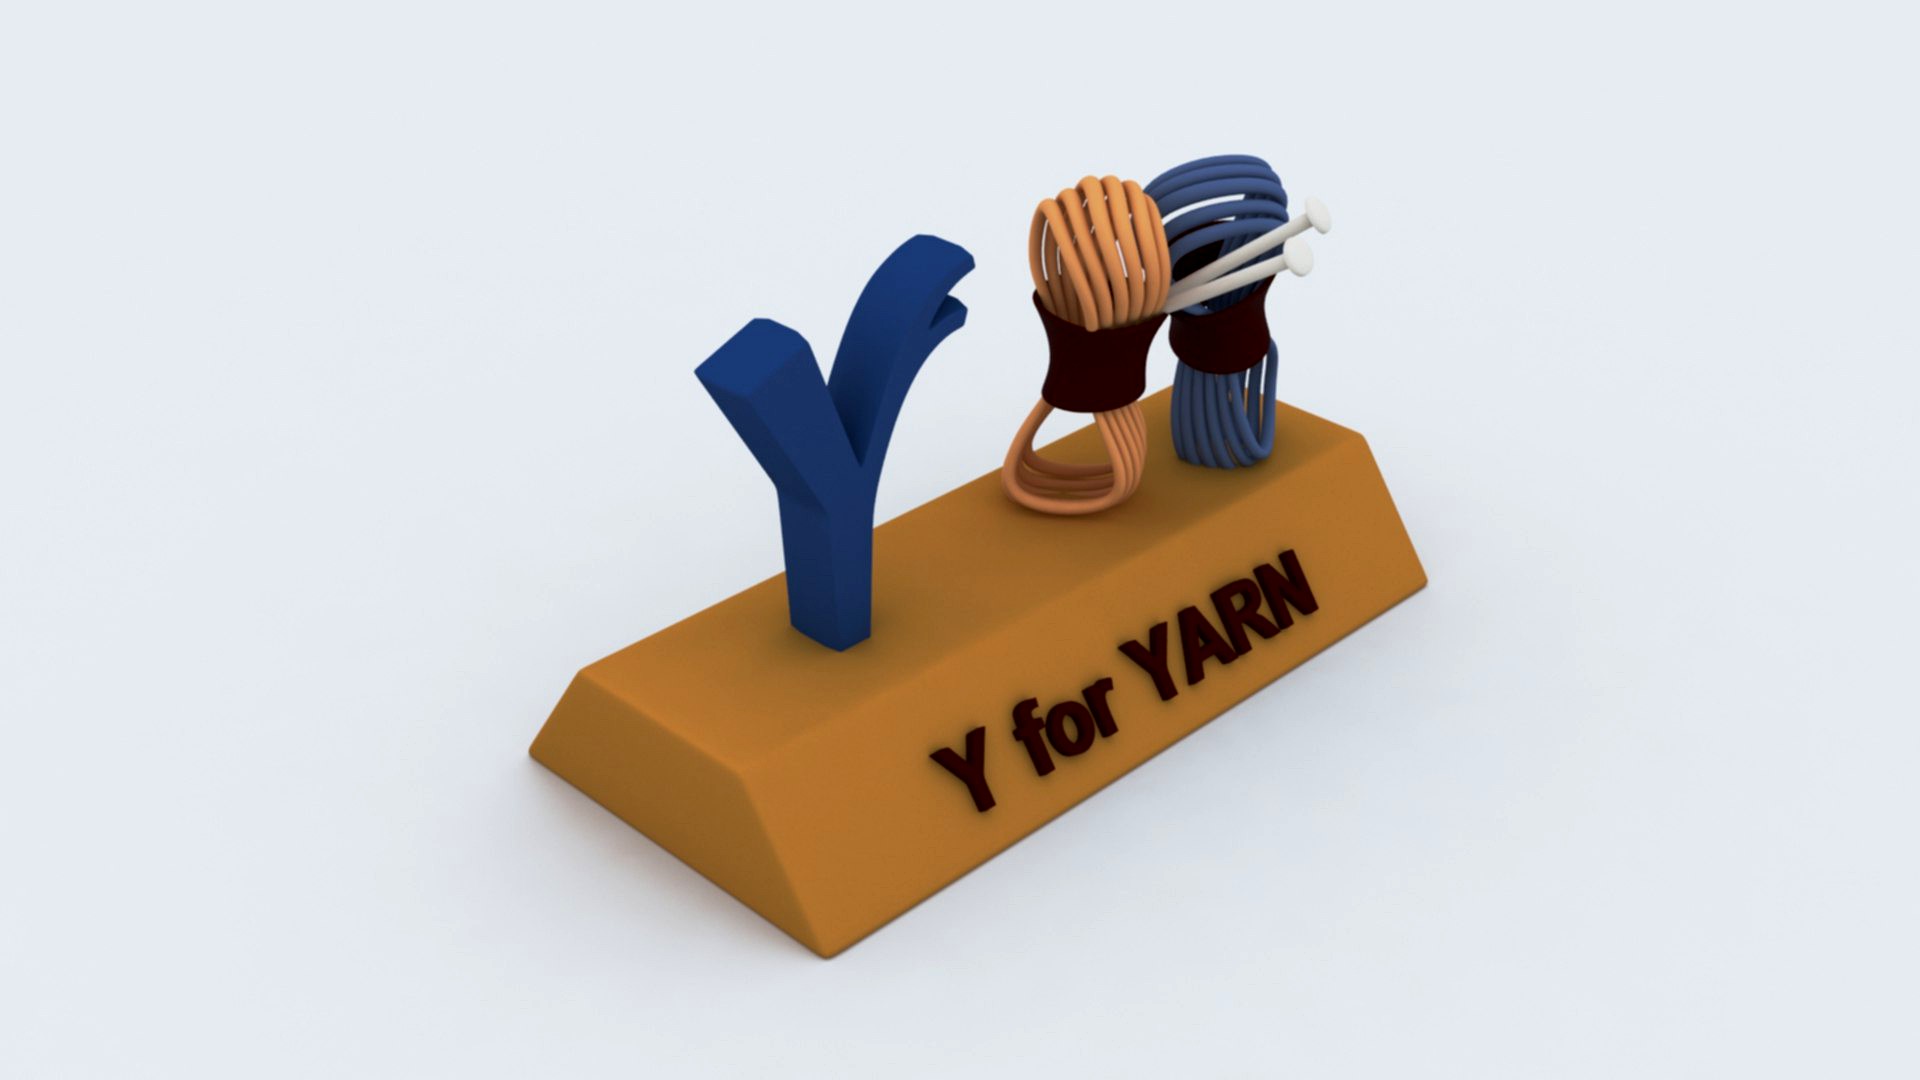 Y for Yarn